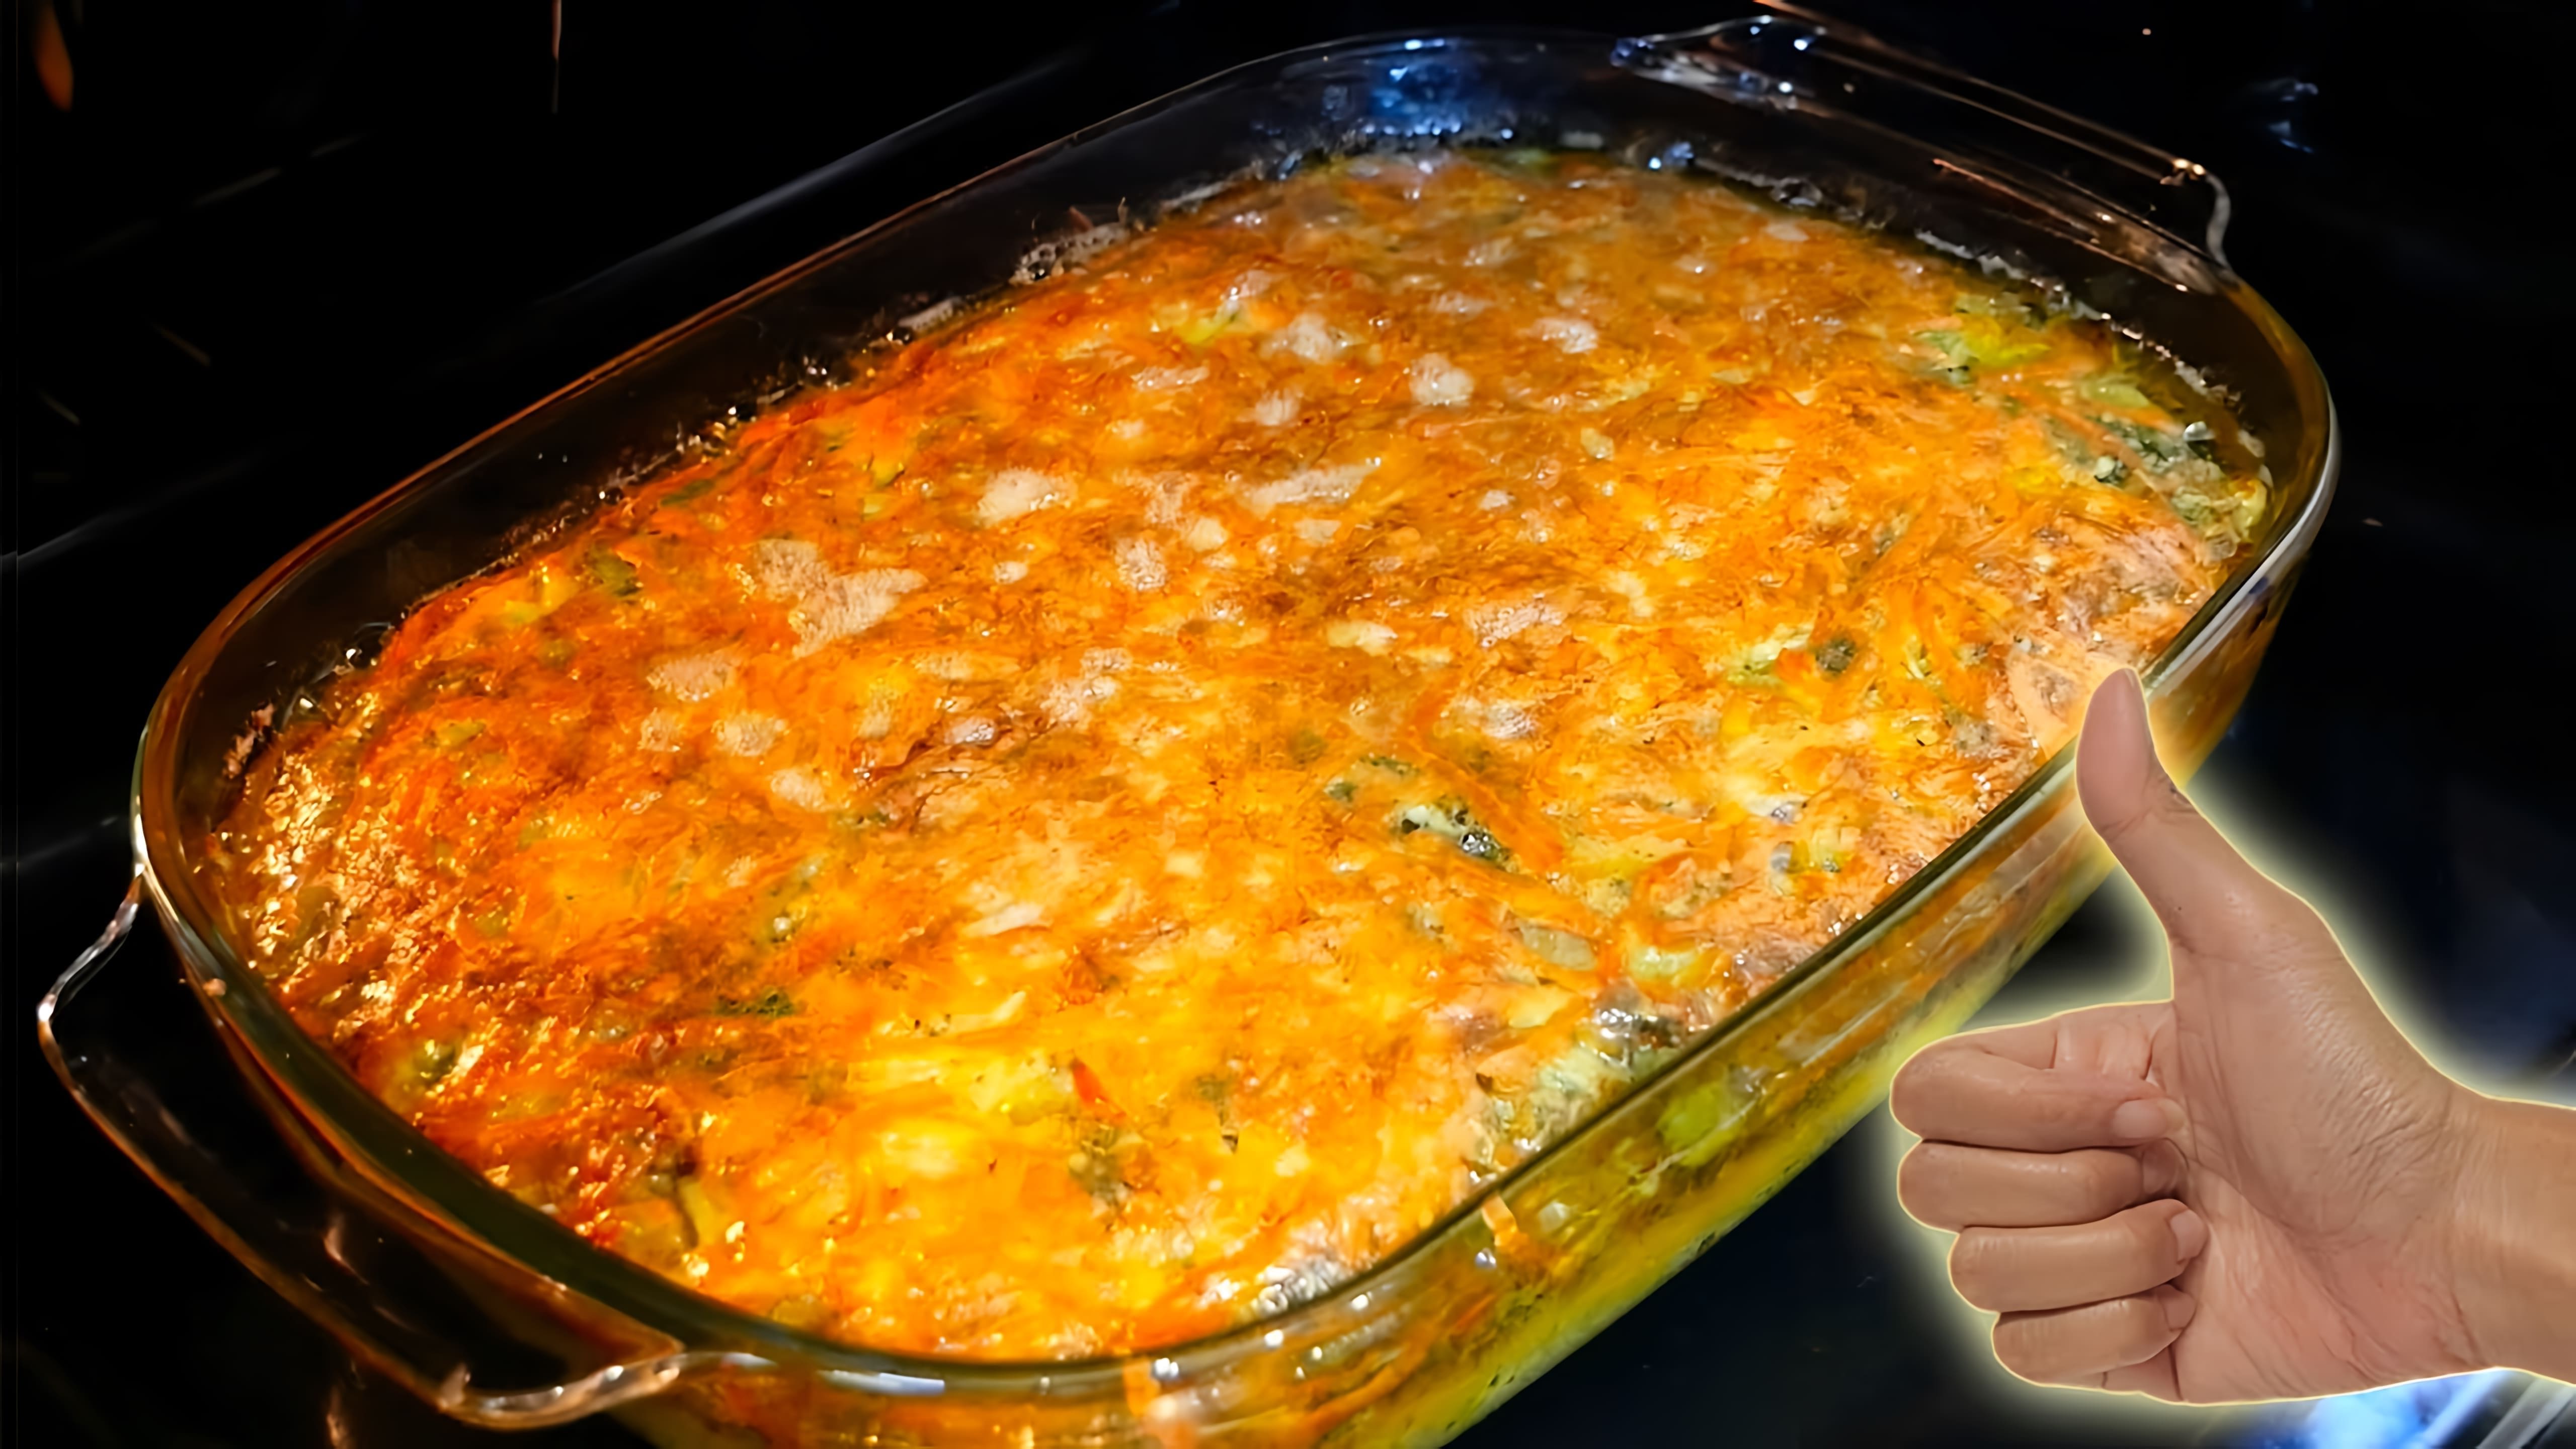 В этом видео демонстрируется процесс приготовления овощной запеканки в духовке с сыром